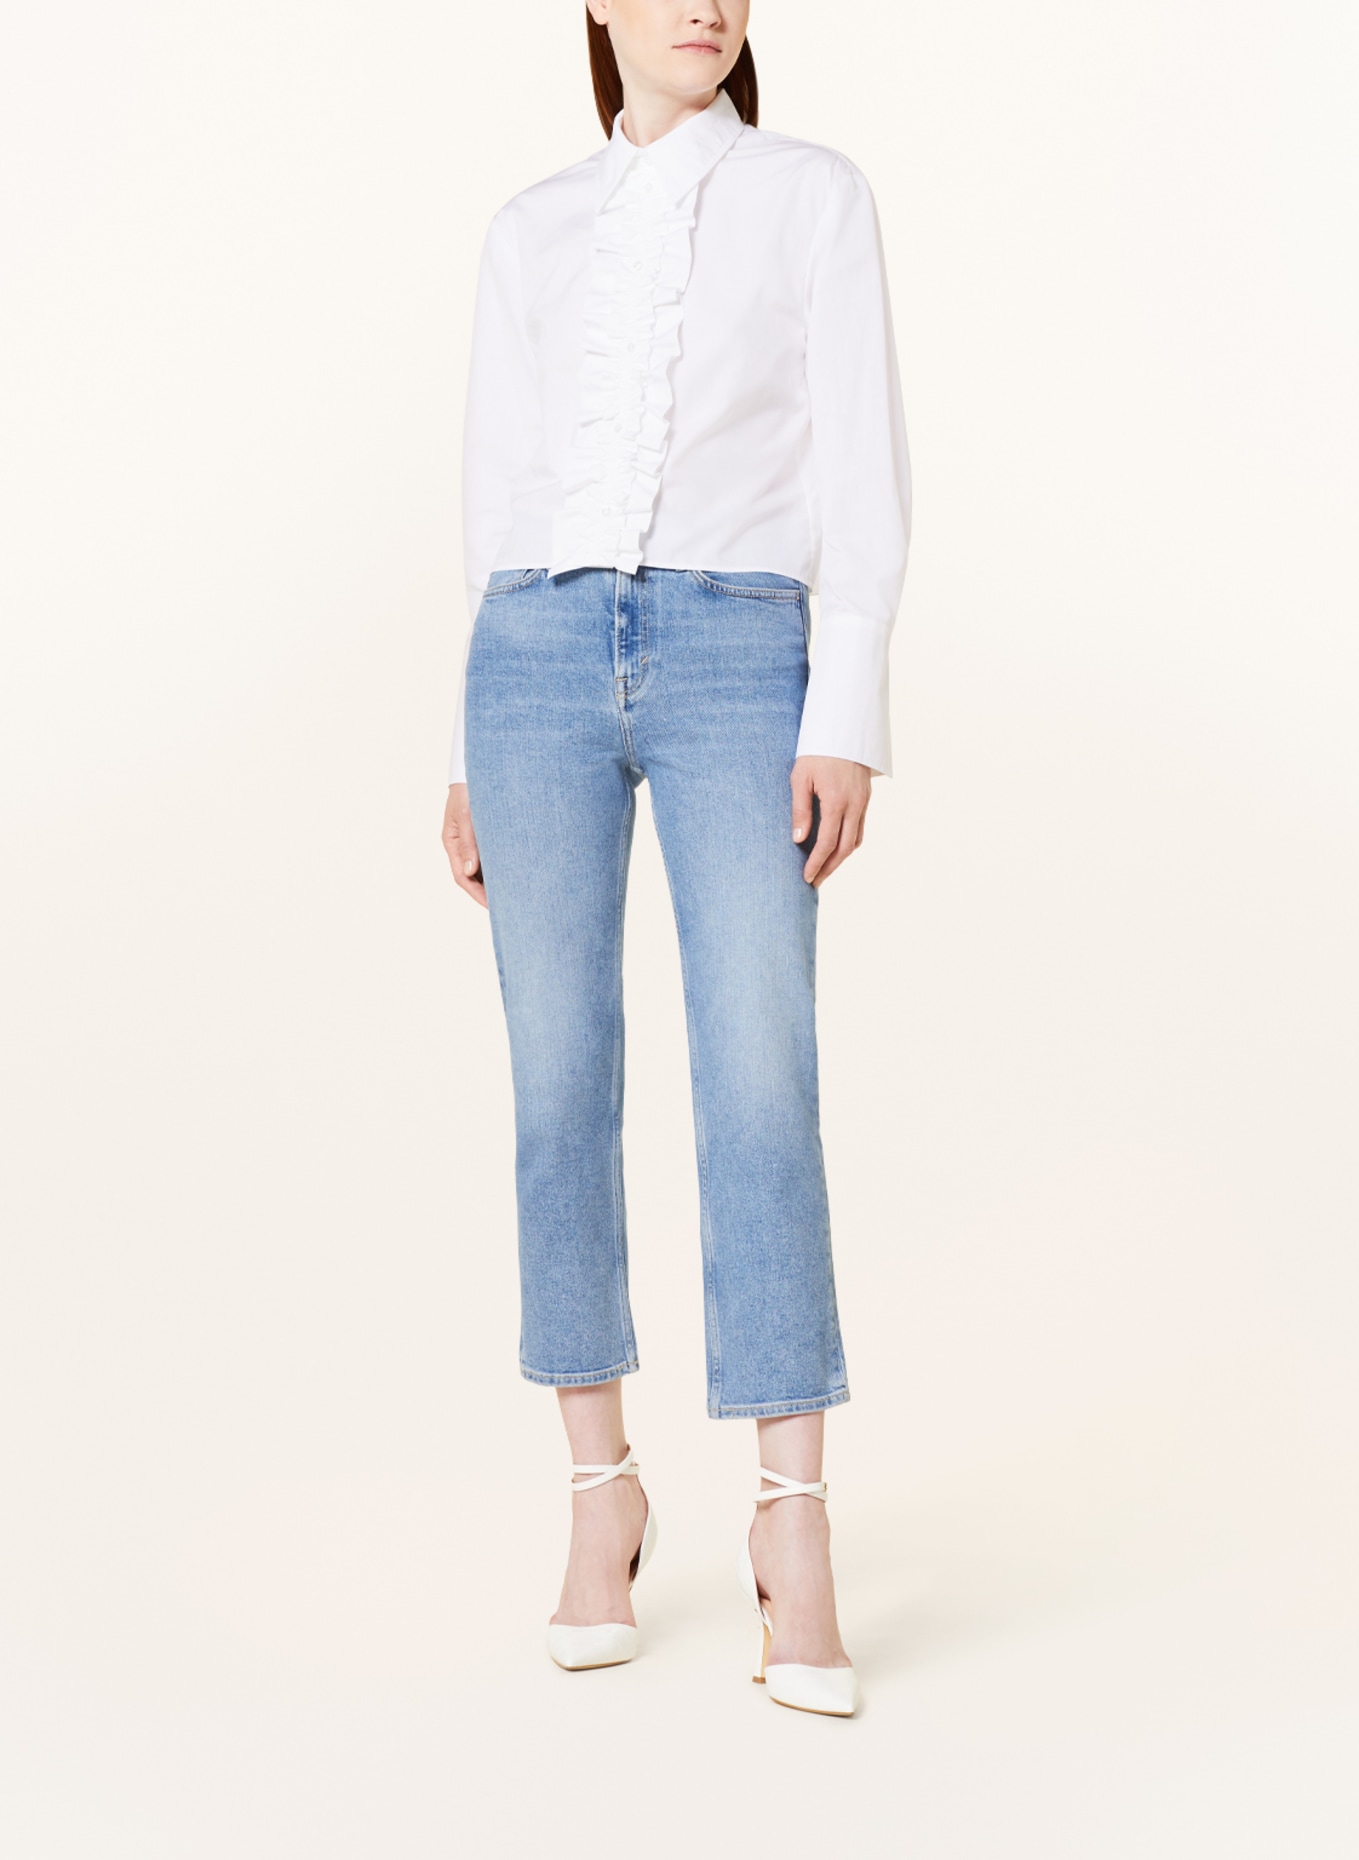 EVA MANN Cropped shirt blouse GITTE WINSTON, Color: WHITE (Image 2)